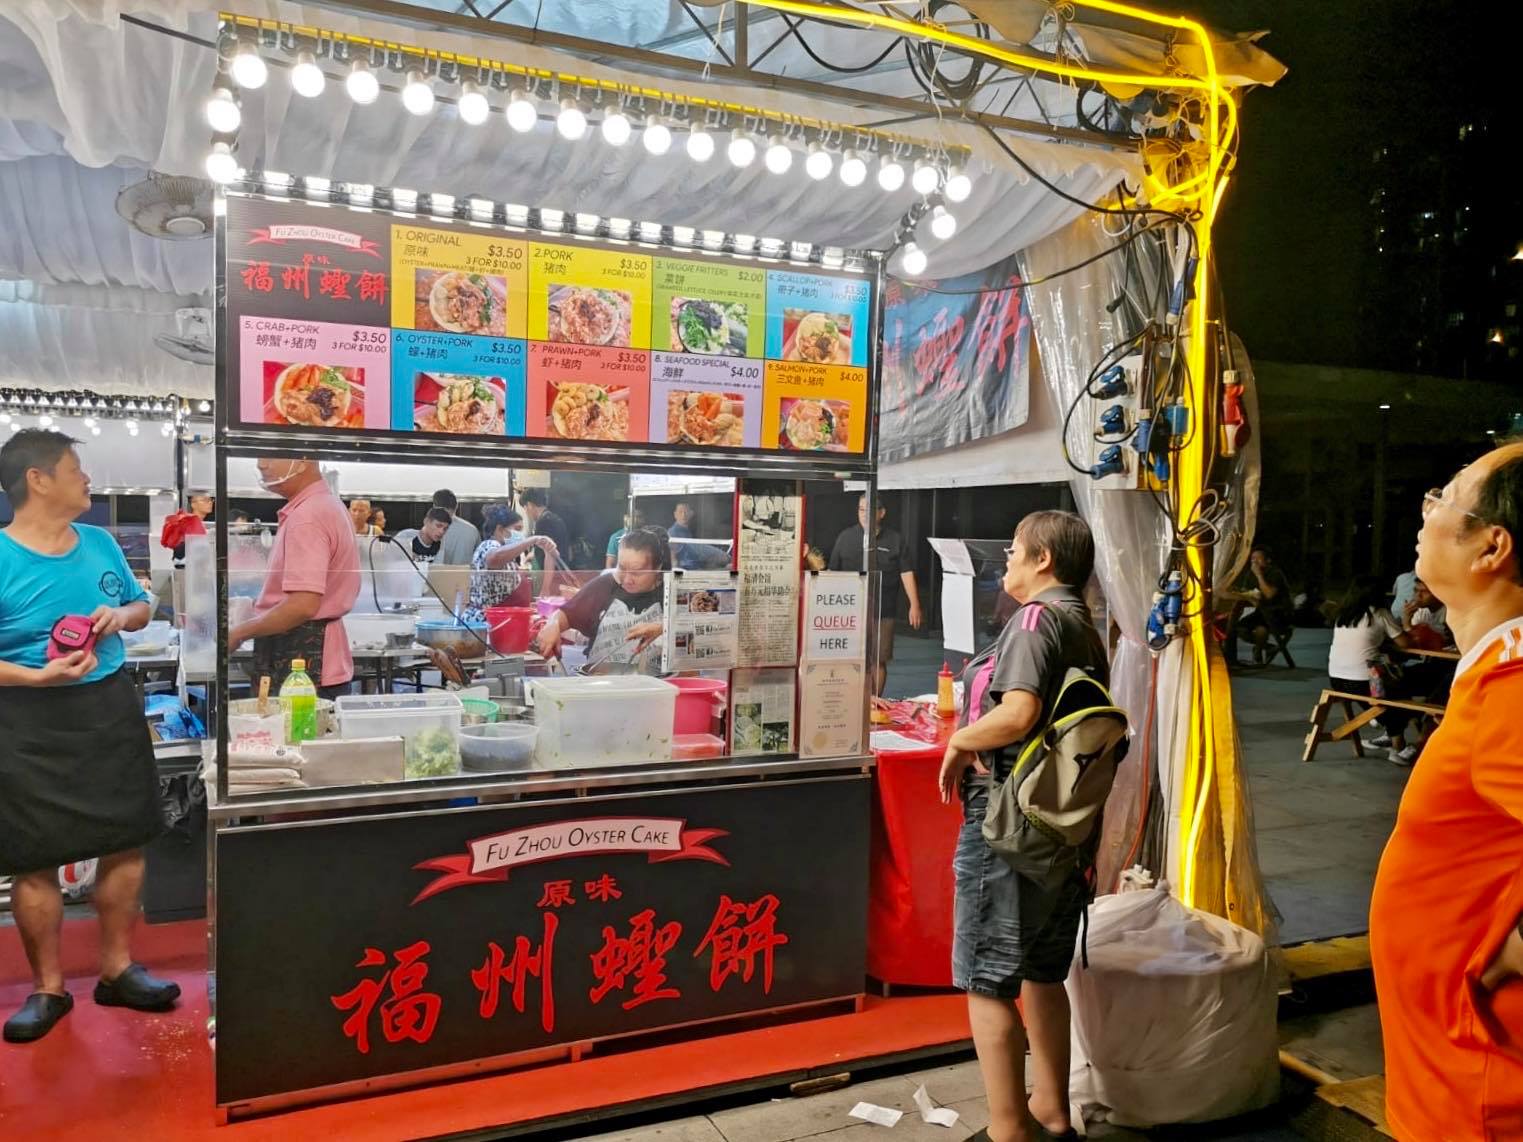 Bukit Panjang’s Pasar Malam Has Fuzhou Oyster Cake, Coke Fried Chicken, Mentaiko Rosti & More (now till 23 Jan 20) - 11